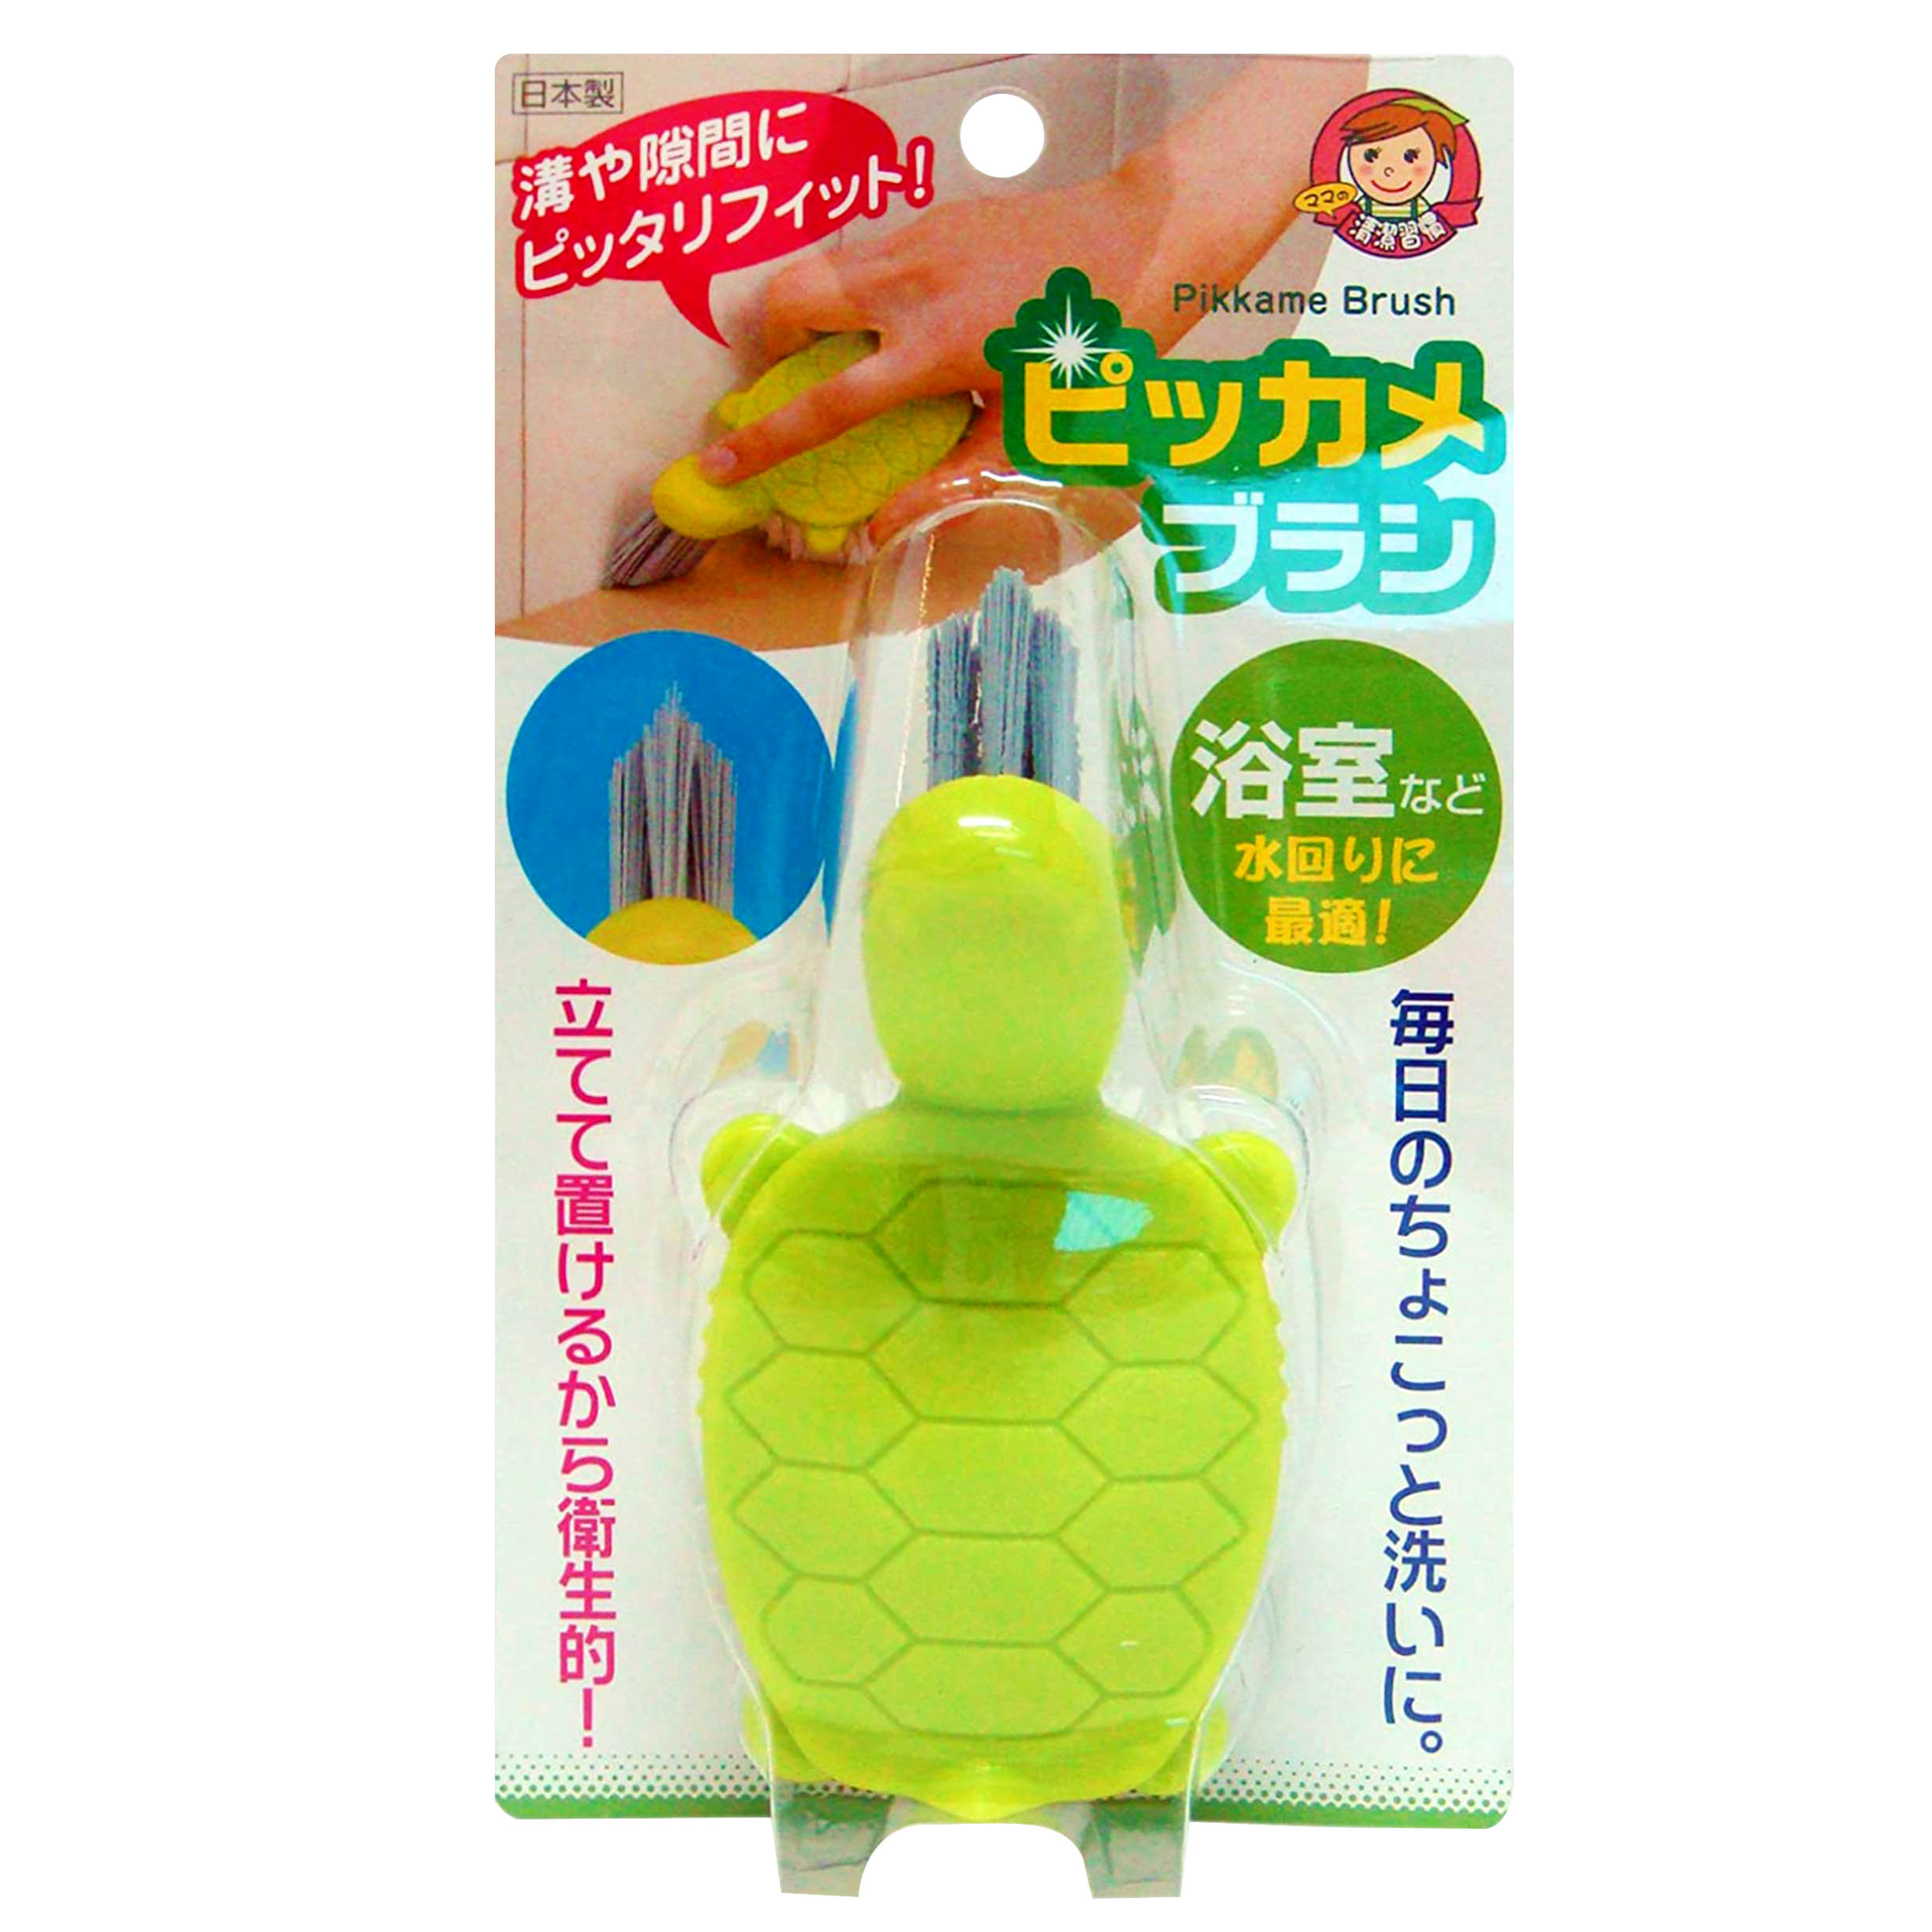 小烏龜清潔刷-Pikkame Brush AIWA アイワ  日本製造進口